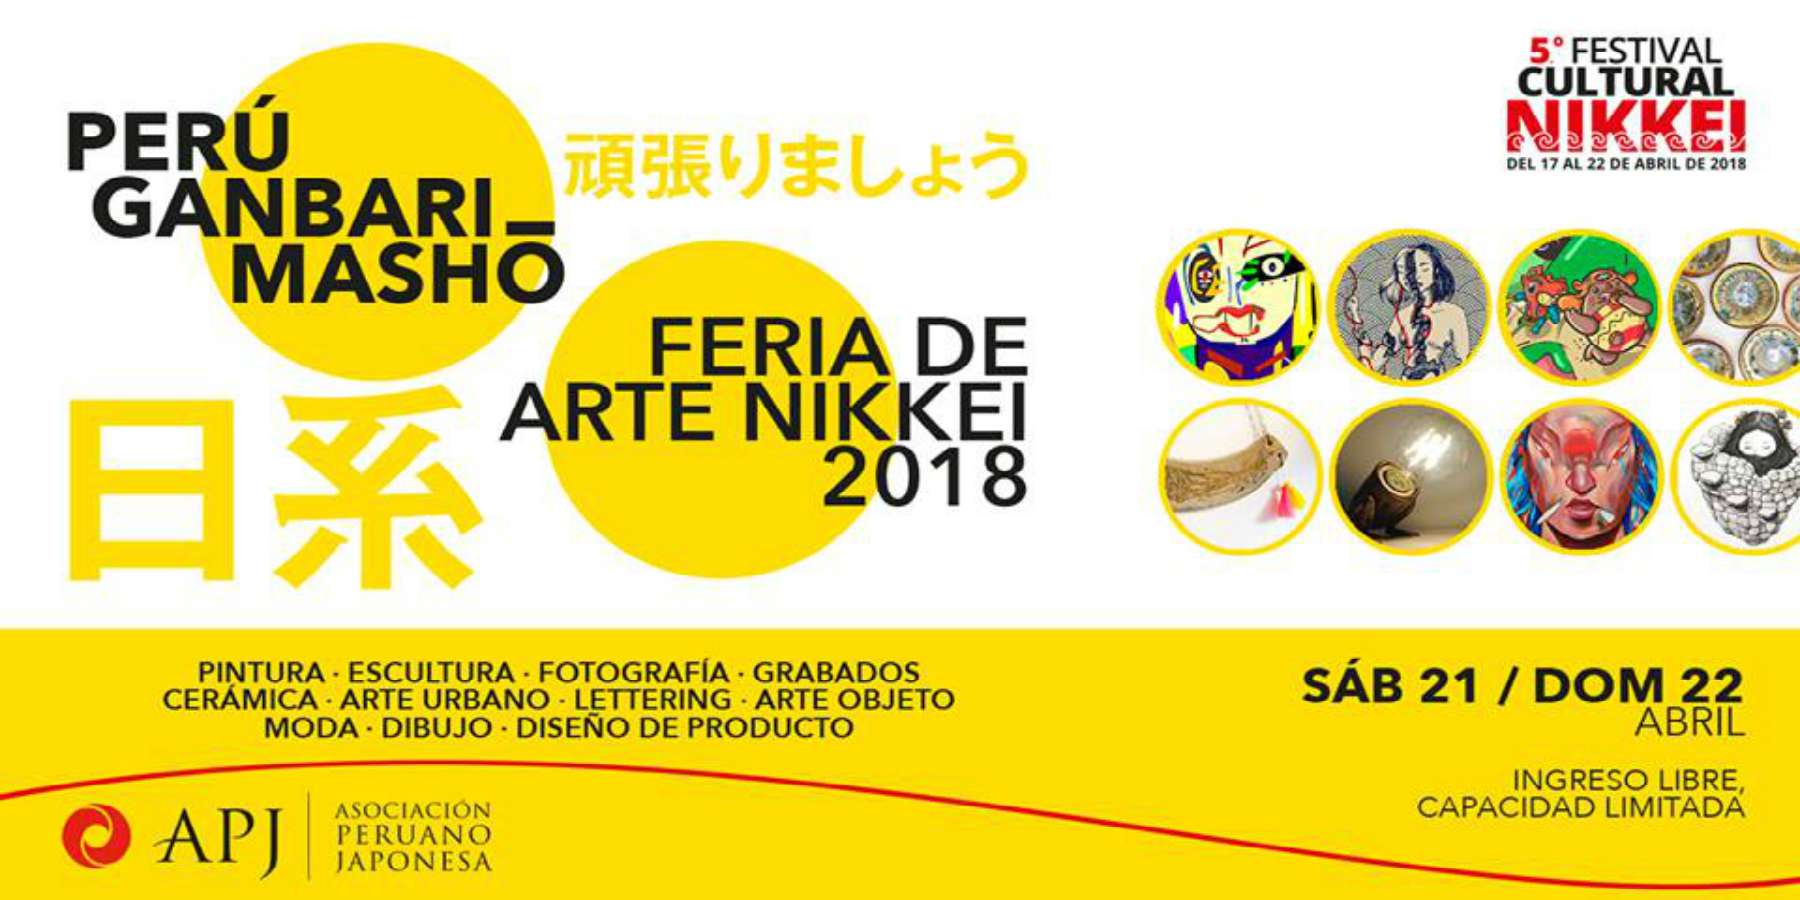 Perú Ganbarimashō Feria de Arte Nikkei 2018